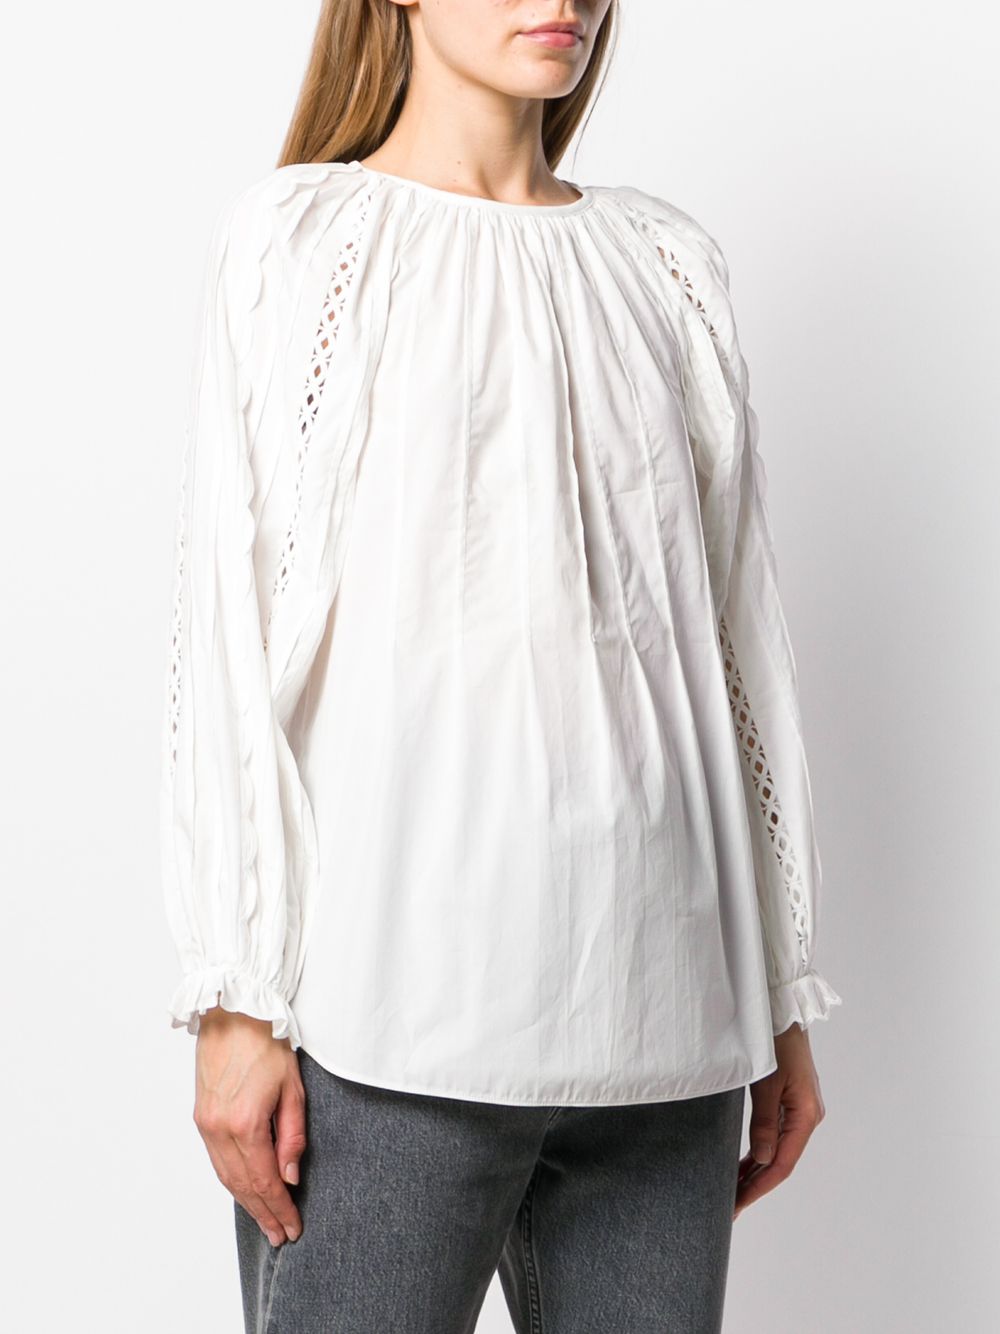 фото See by chloé блузка с плиссировкой спереди